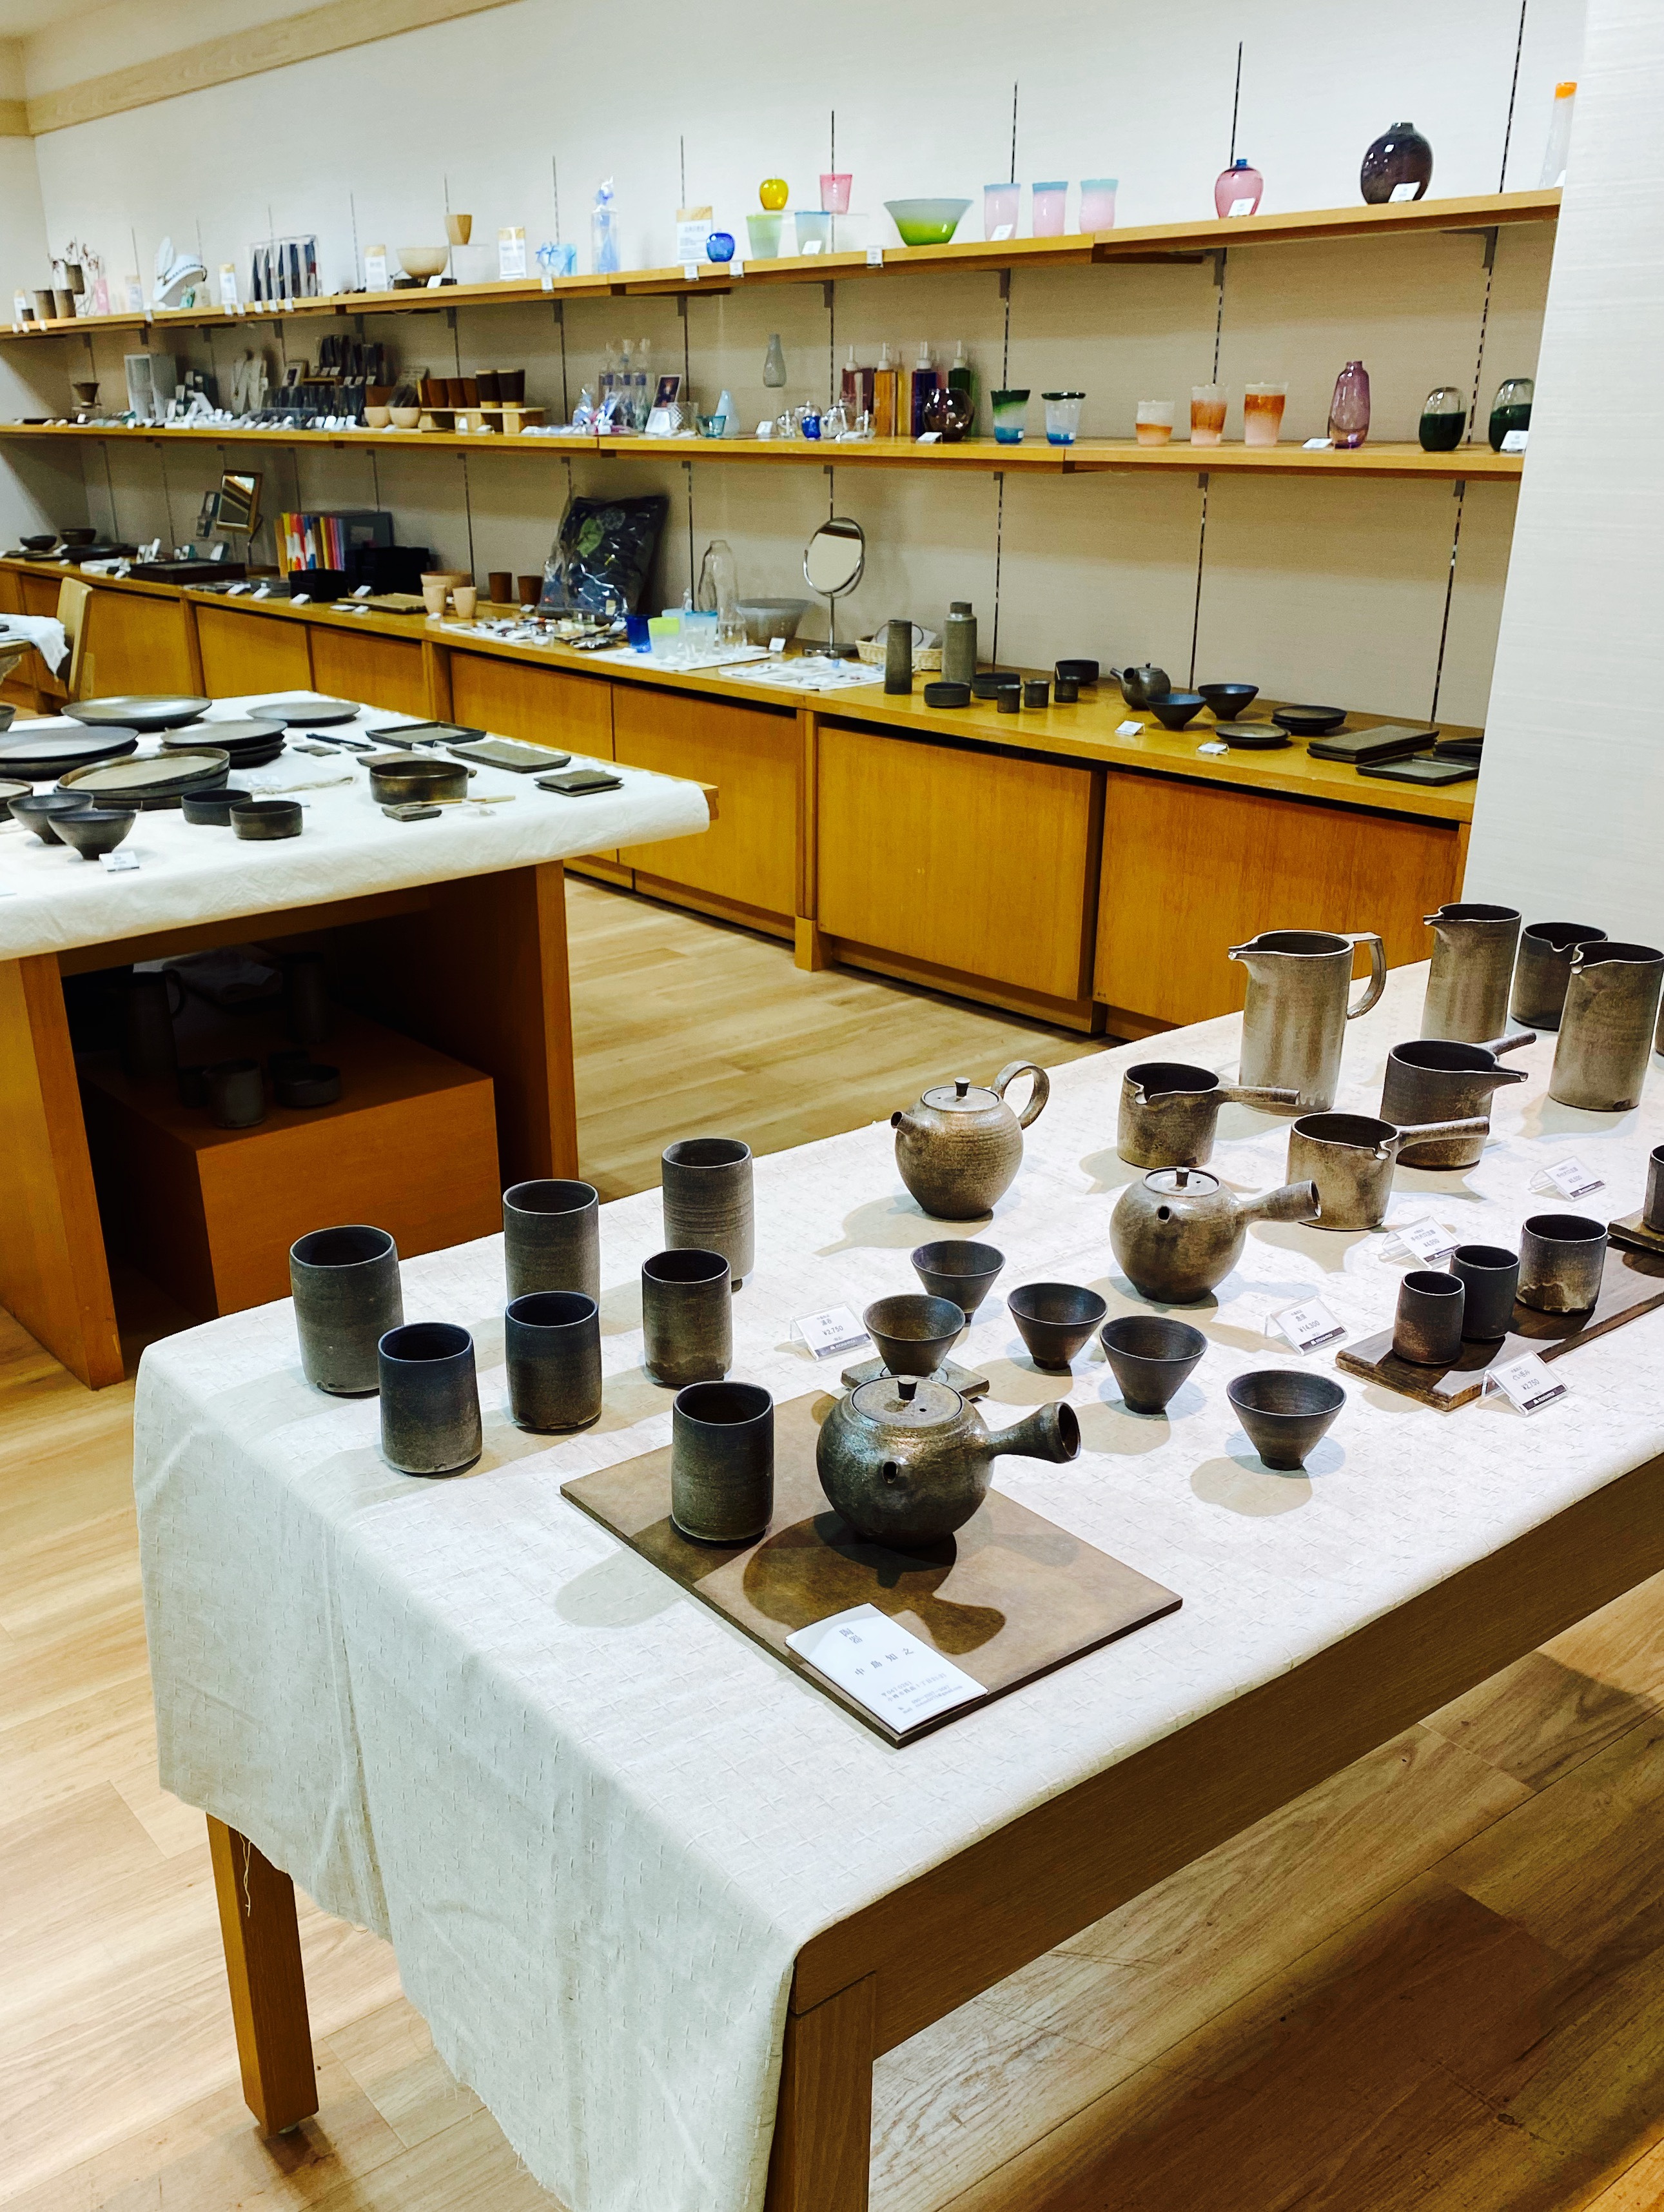 札幌丸井今井で開催中の「こだわりの手仕事ー陶器と硝子」